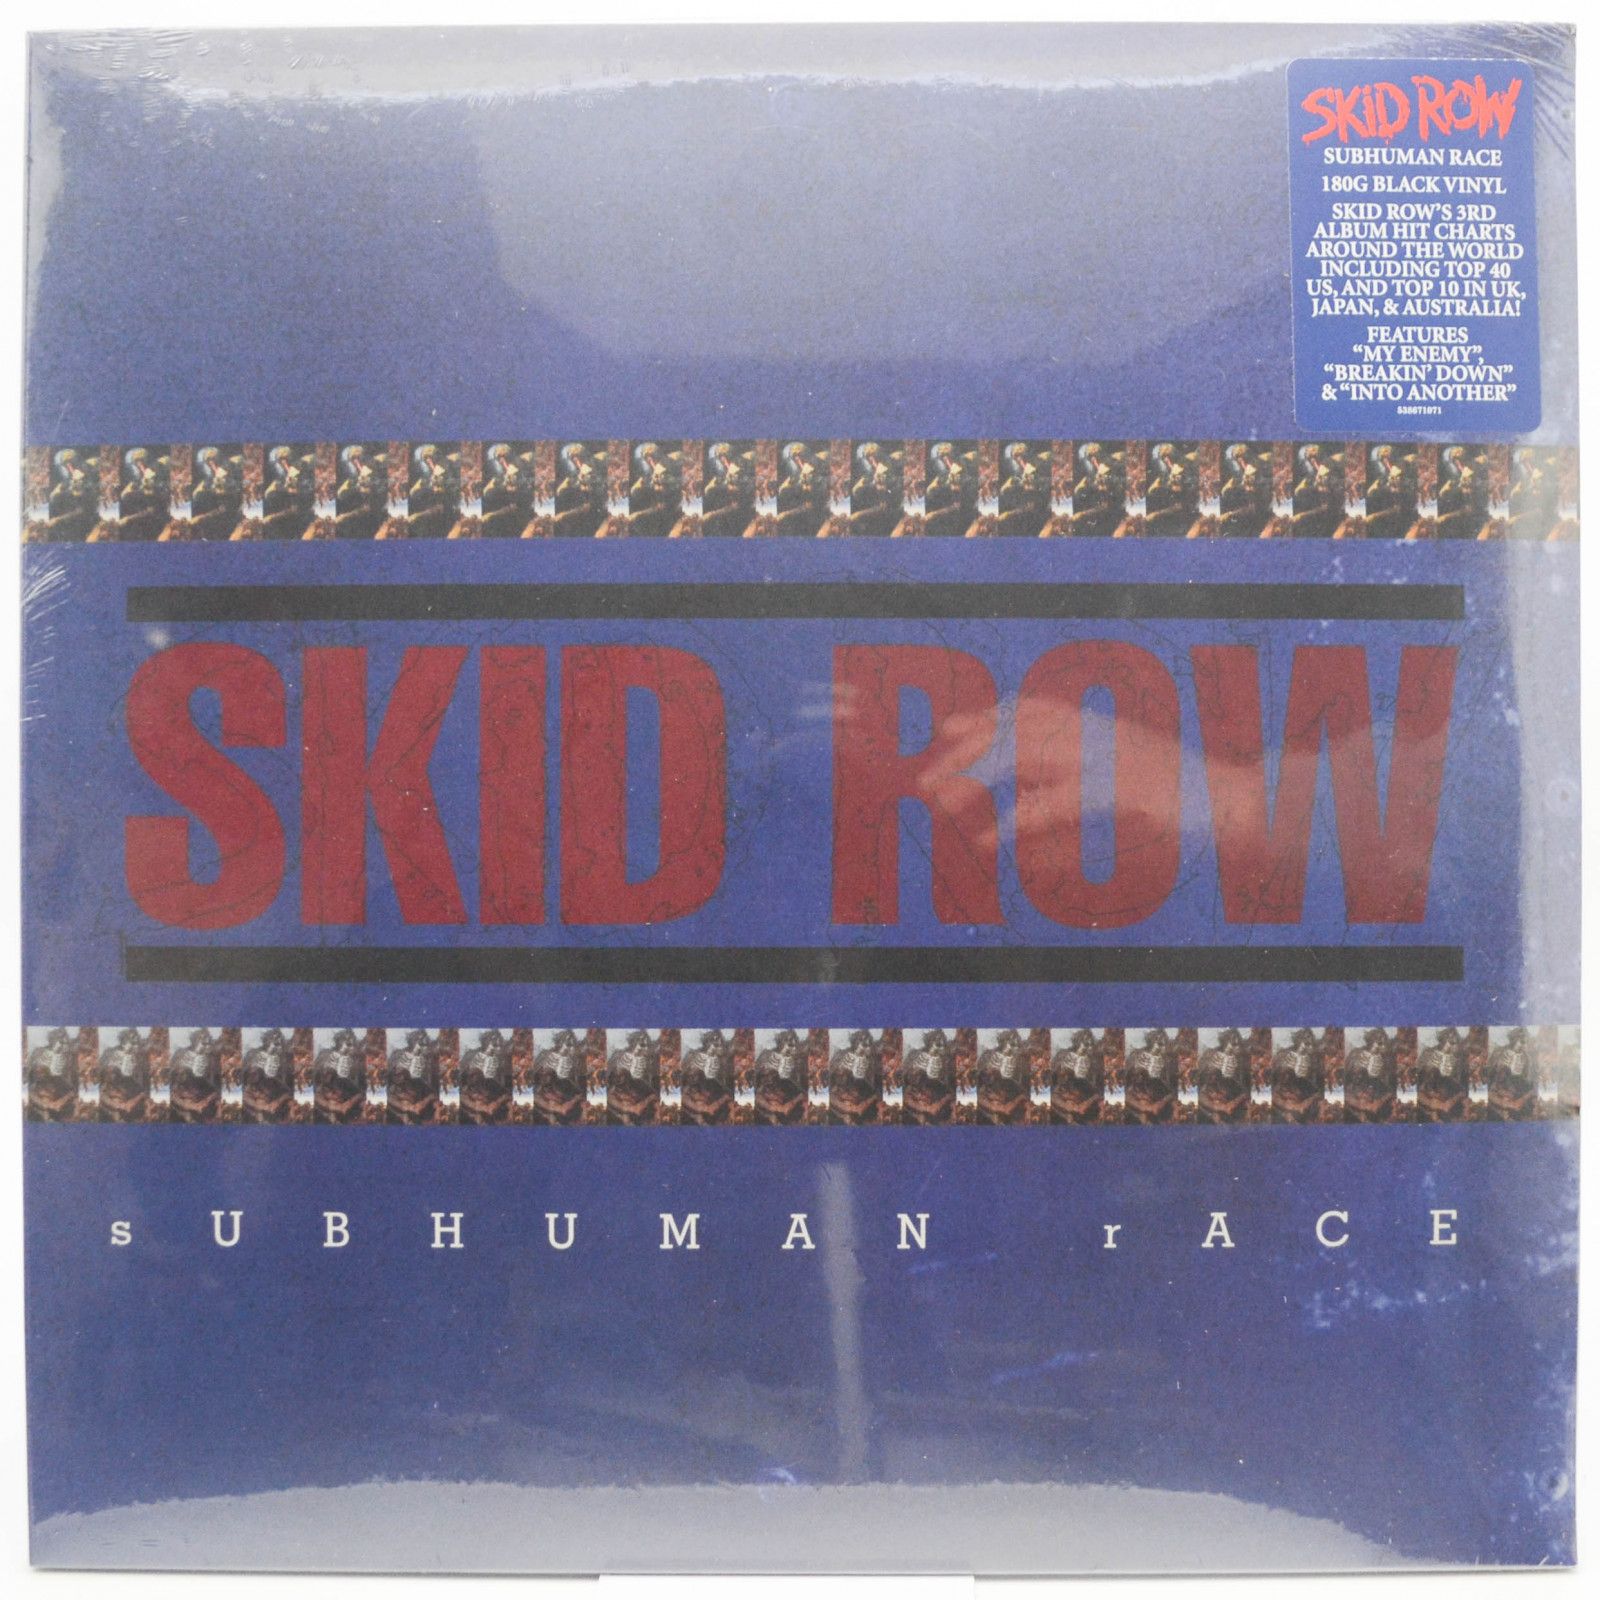 Skid Row — Subhuman Race (2LP), 1995